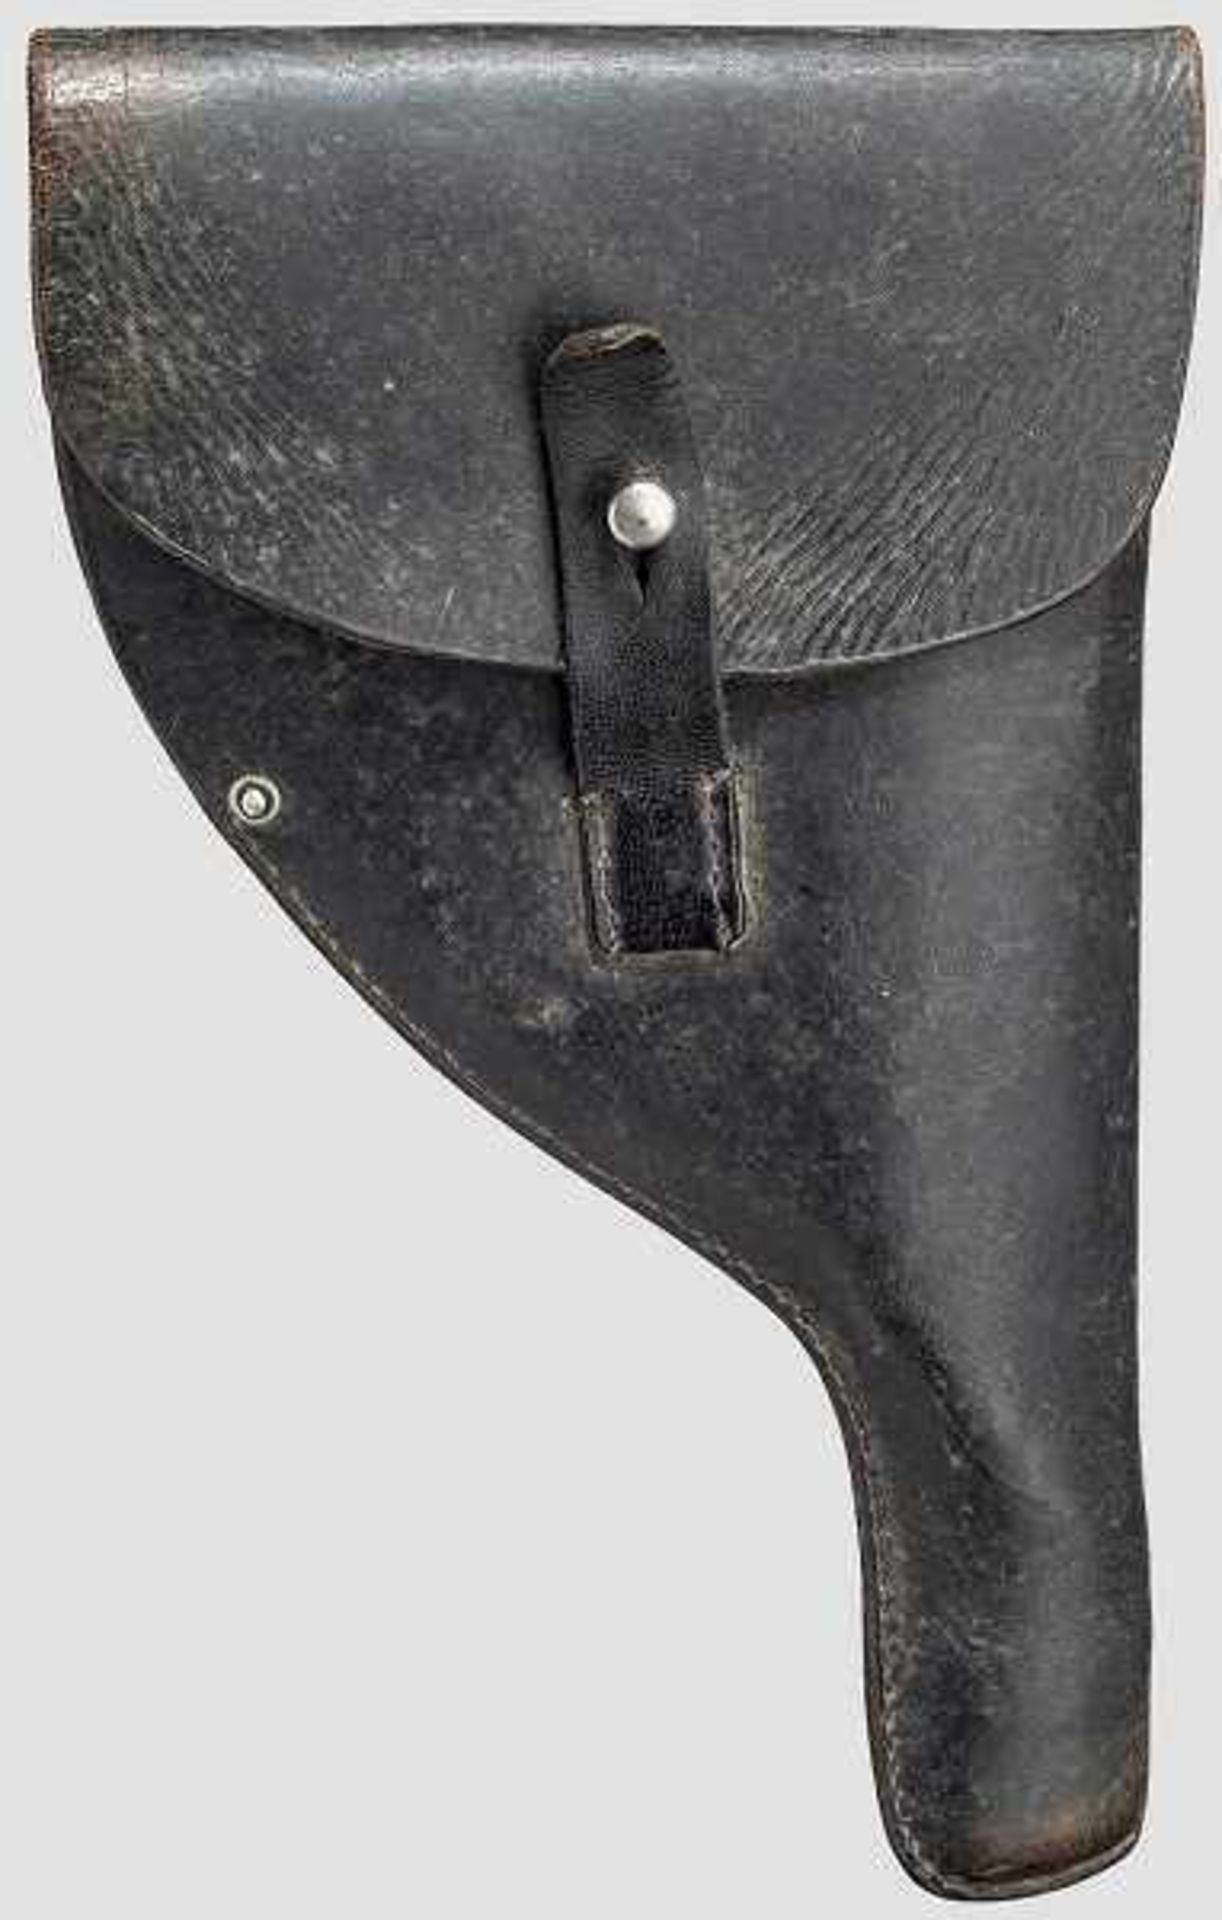 Stiftfeuerrevolver, um 1870 Kal. 11 mm, Nummer 15210 (Rahmen links), 1022 (Laufunterseite), - Bild 2 aus 2